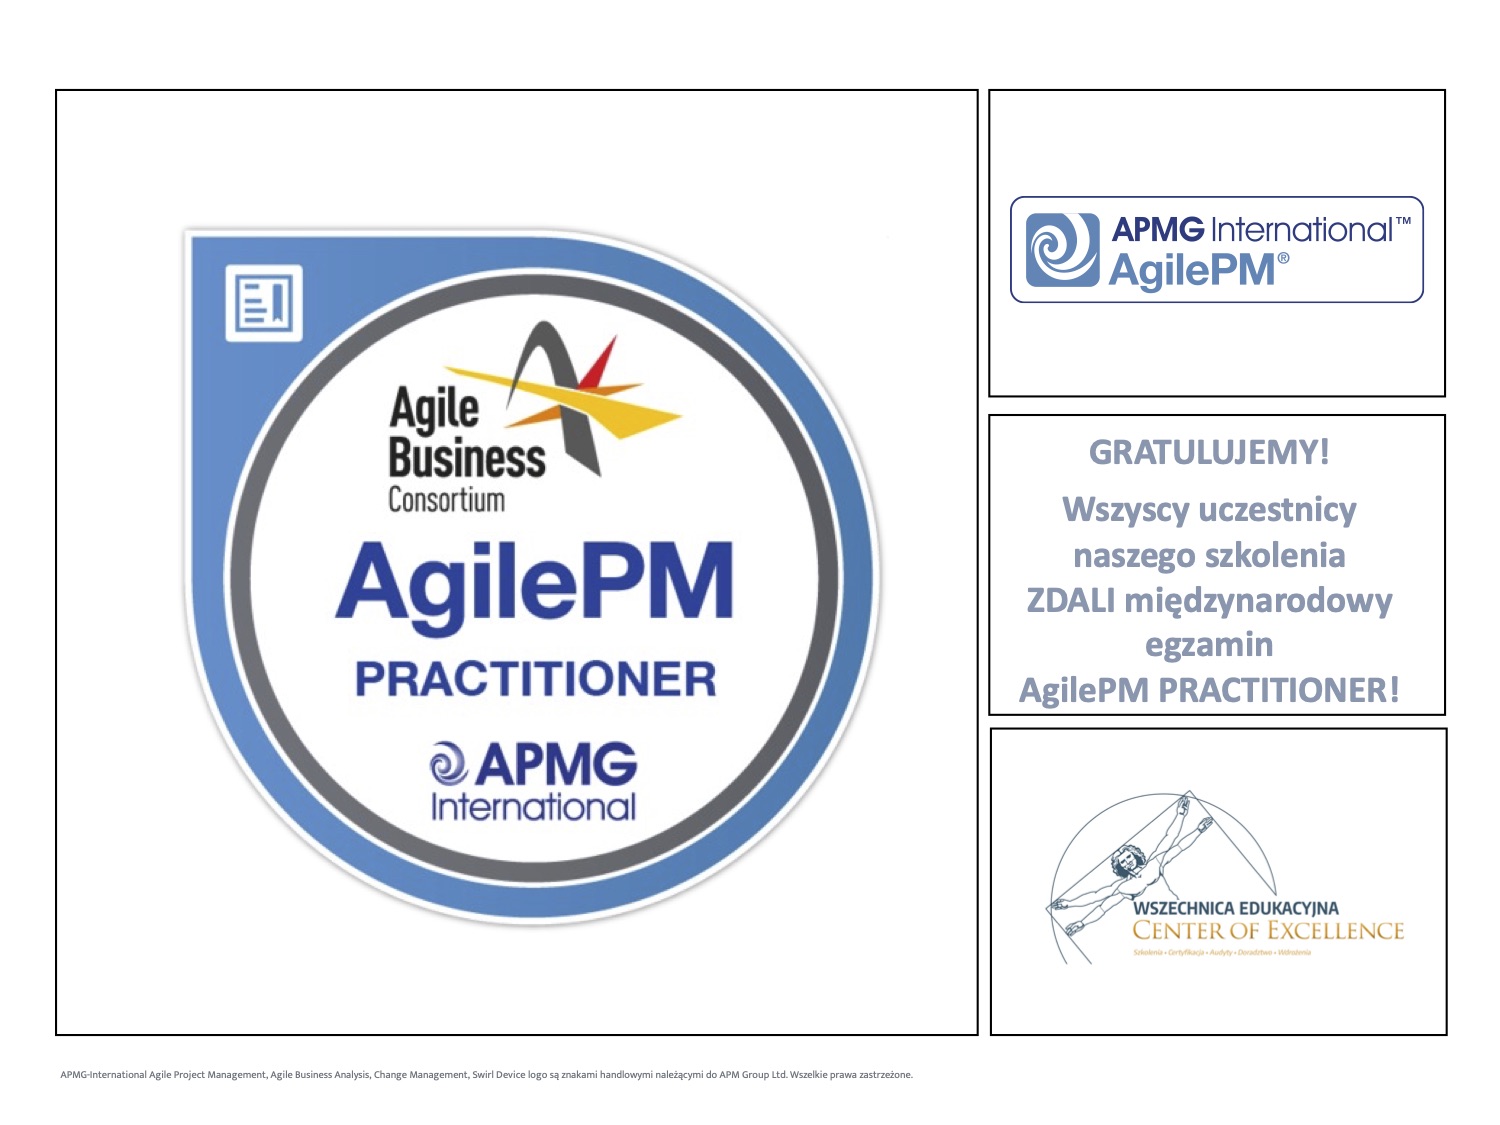 AgilePM Practitioner - Wszechnnica Edukacyjna.jpg